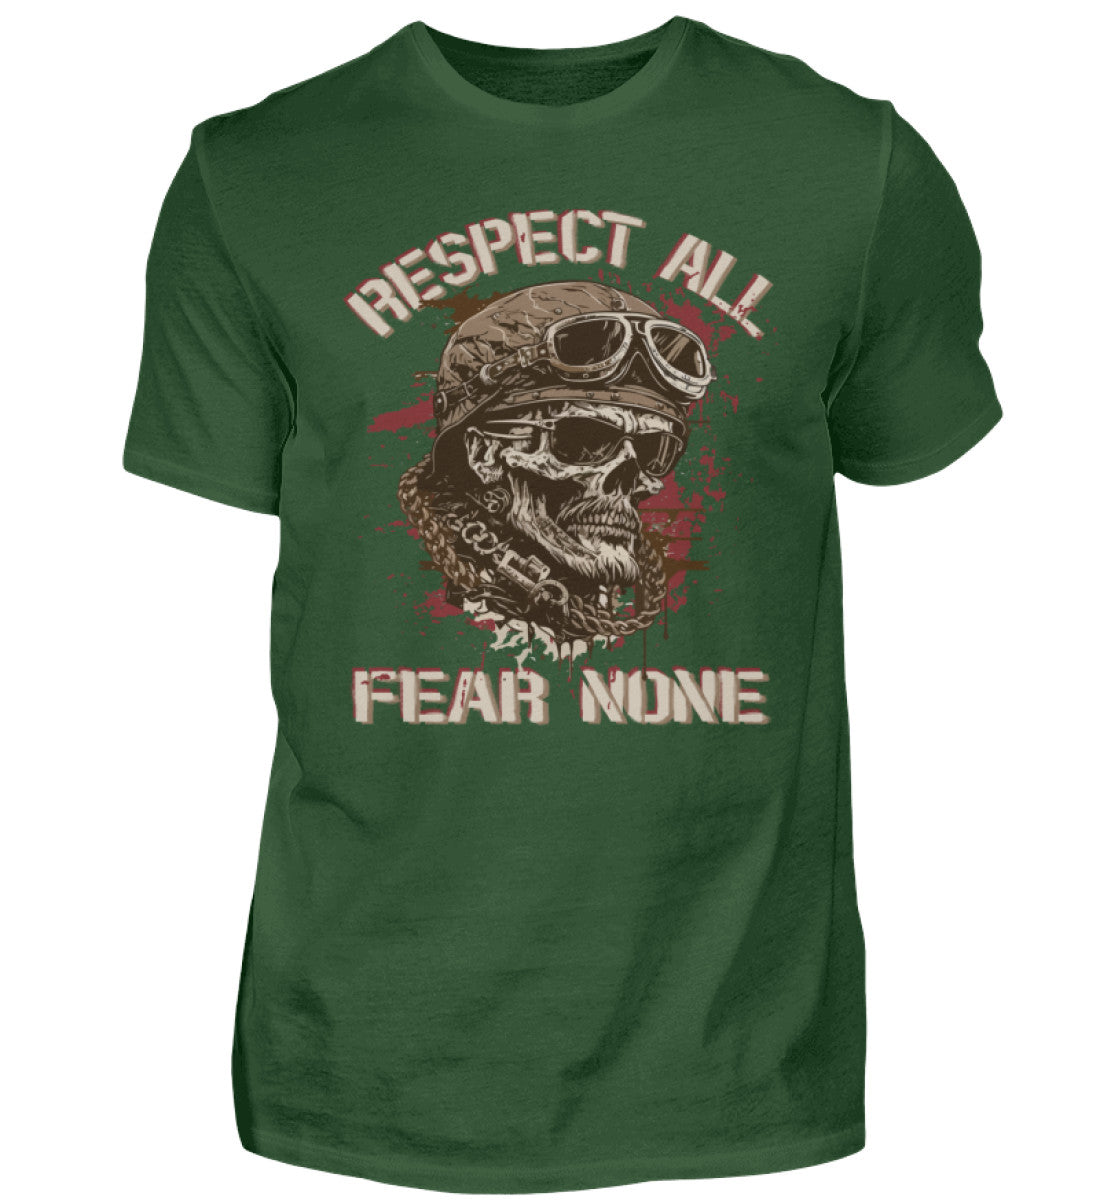 Ein Biker T-Shirt für Motorradfahrer von Wingbikers mit dem Aufdruck, Respect All - Fear None, in dunkelgrün.